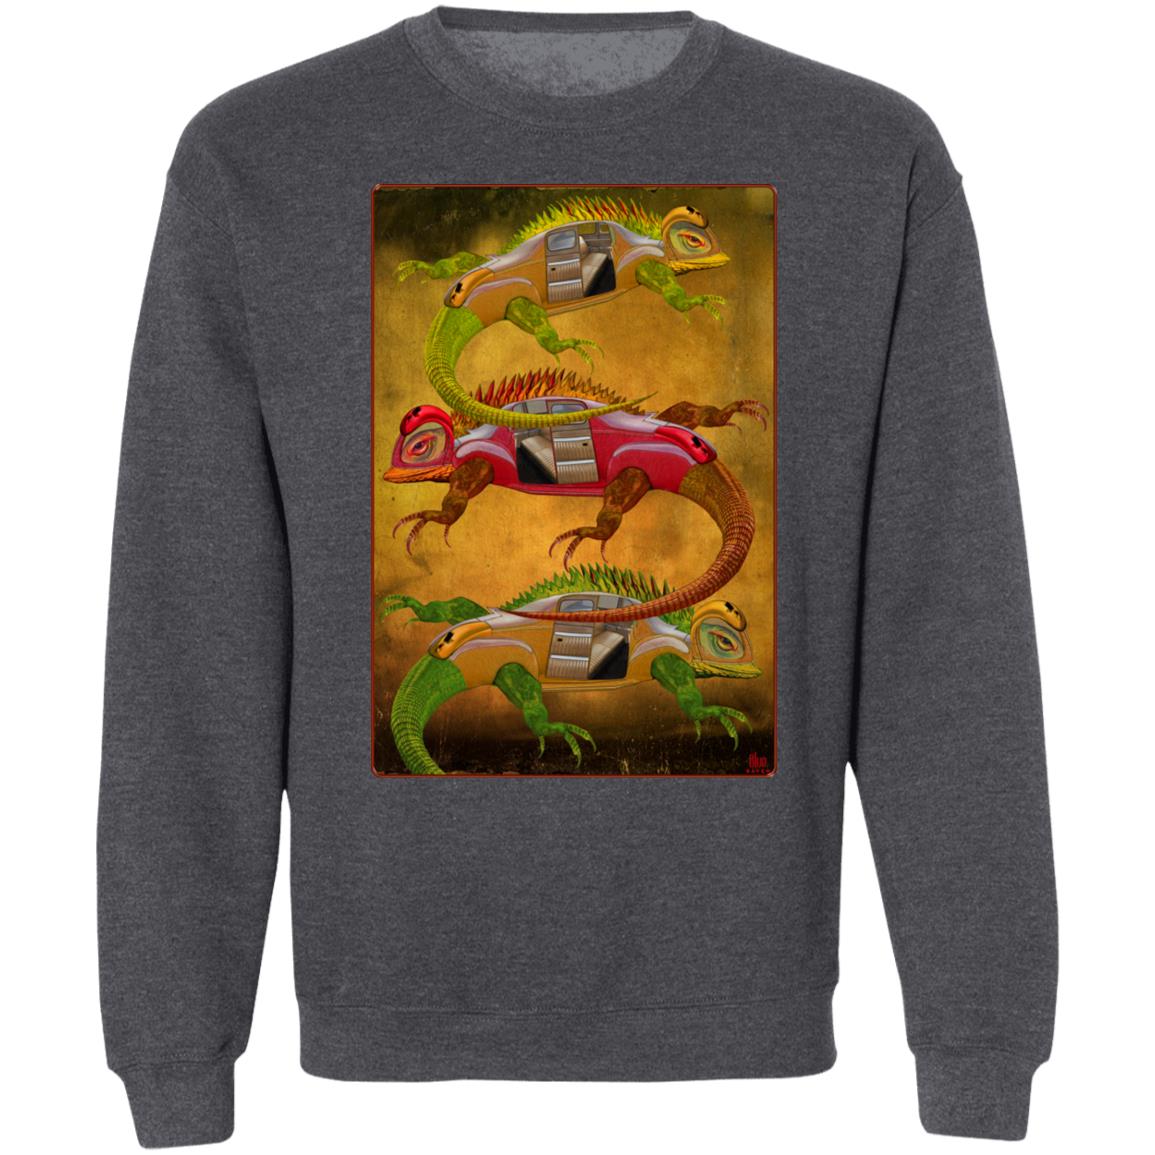 Uber Lizards - Unisex Crew Neck Sweatshirt